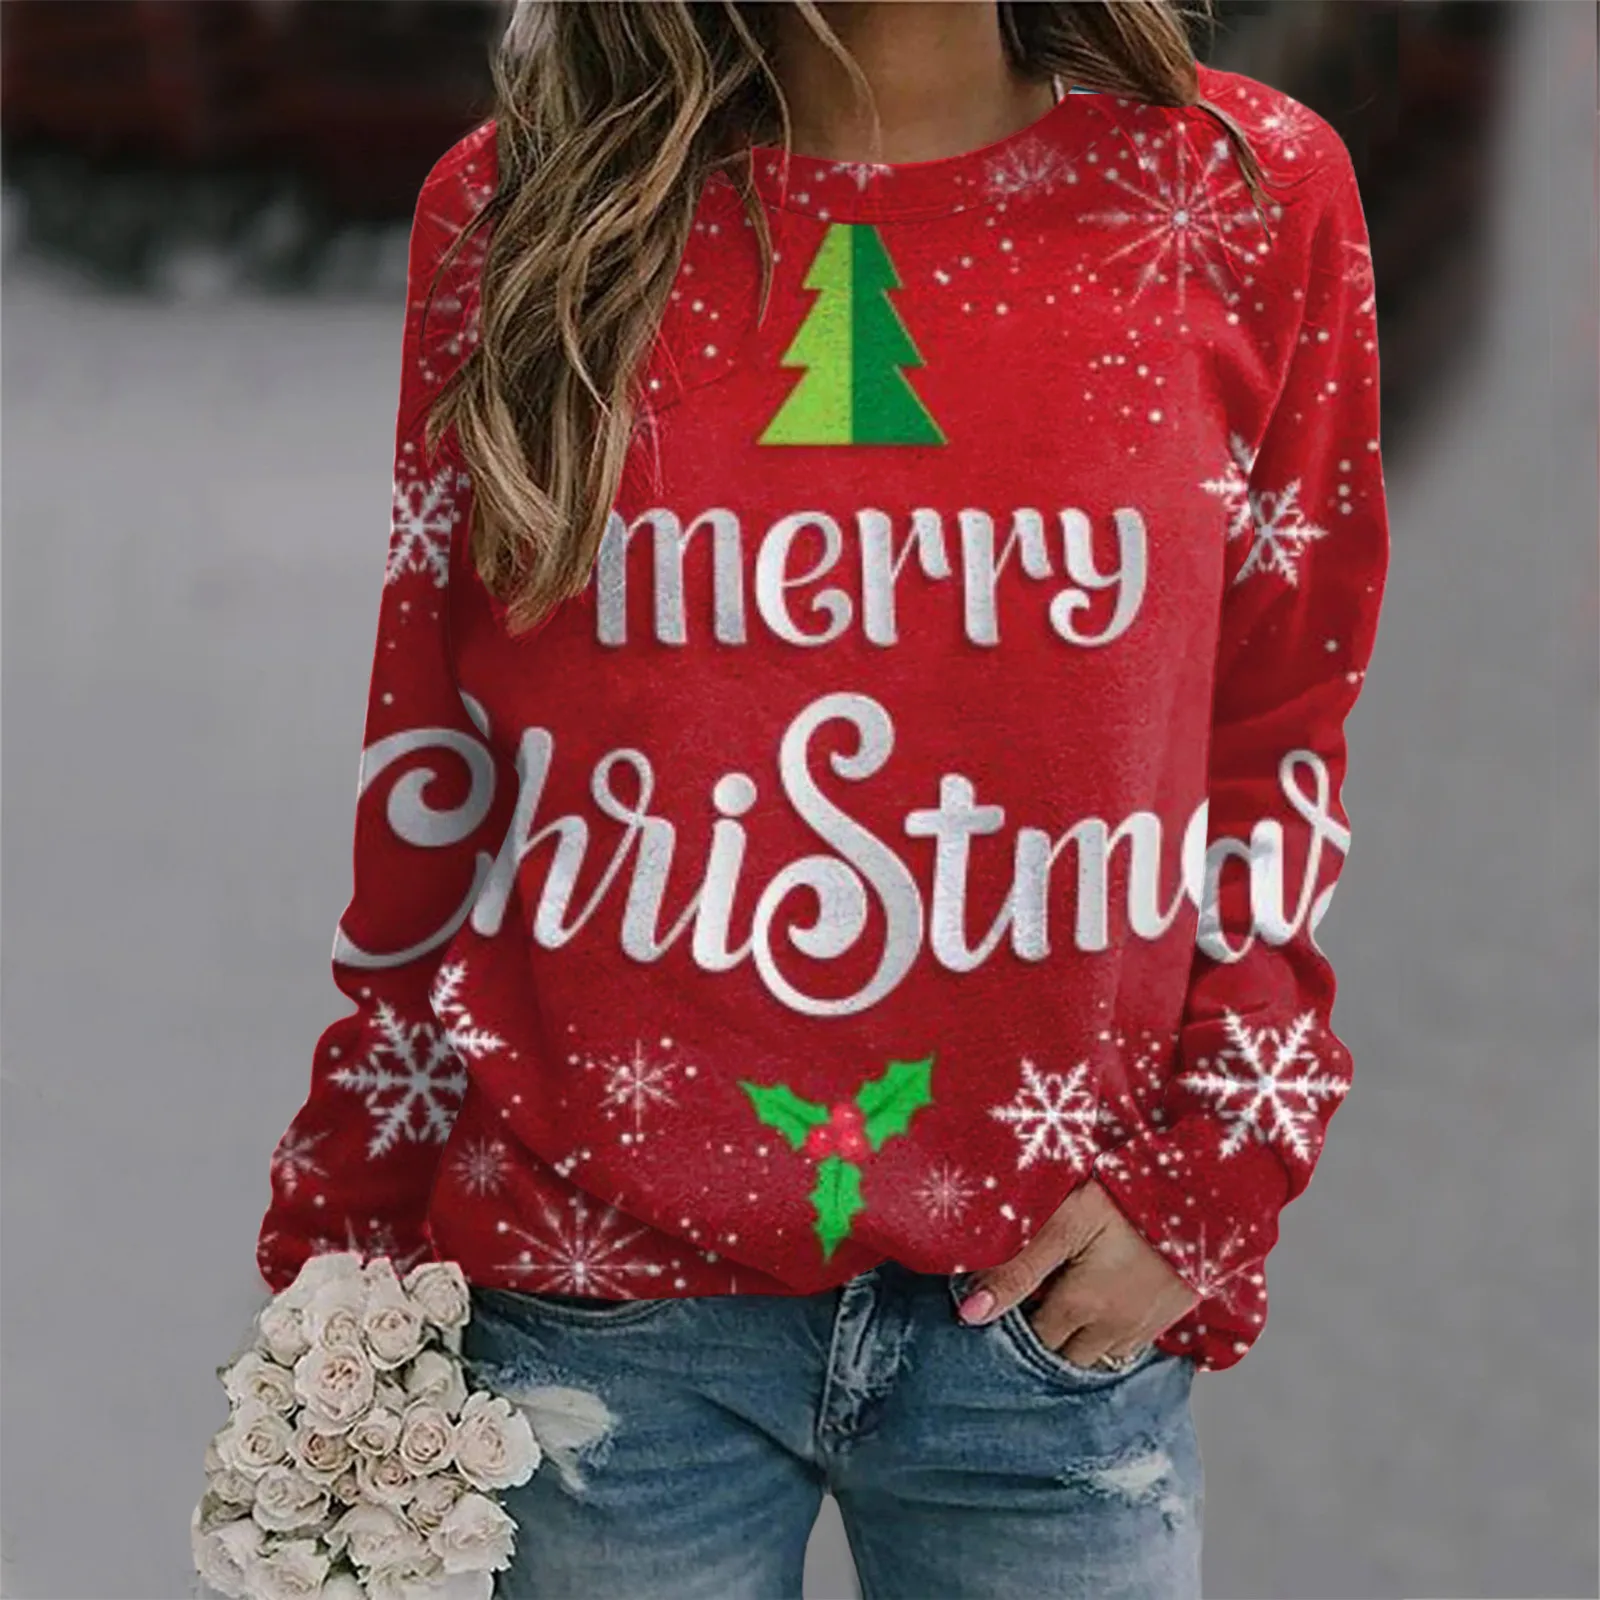 

Хлопковый пуловер, свитера, Женский свитшот с надписью "Merry Christmas" для женщин, забавные женские худи с рисунком рождественской елки и грузовика, пуловер